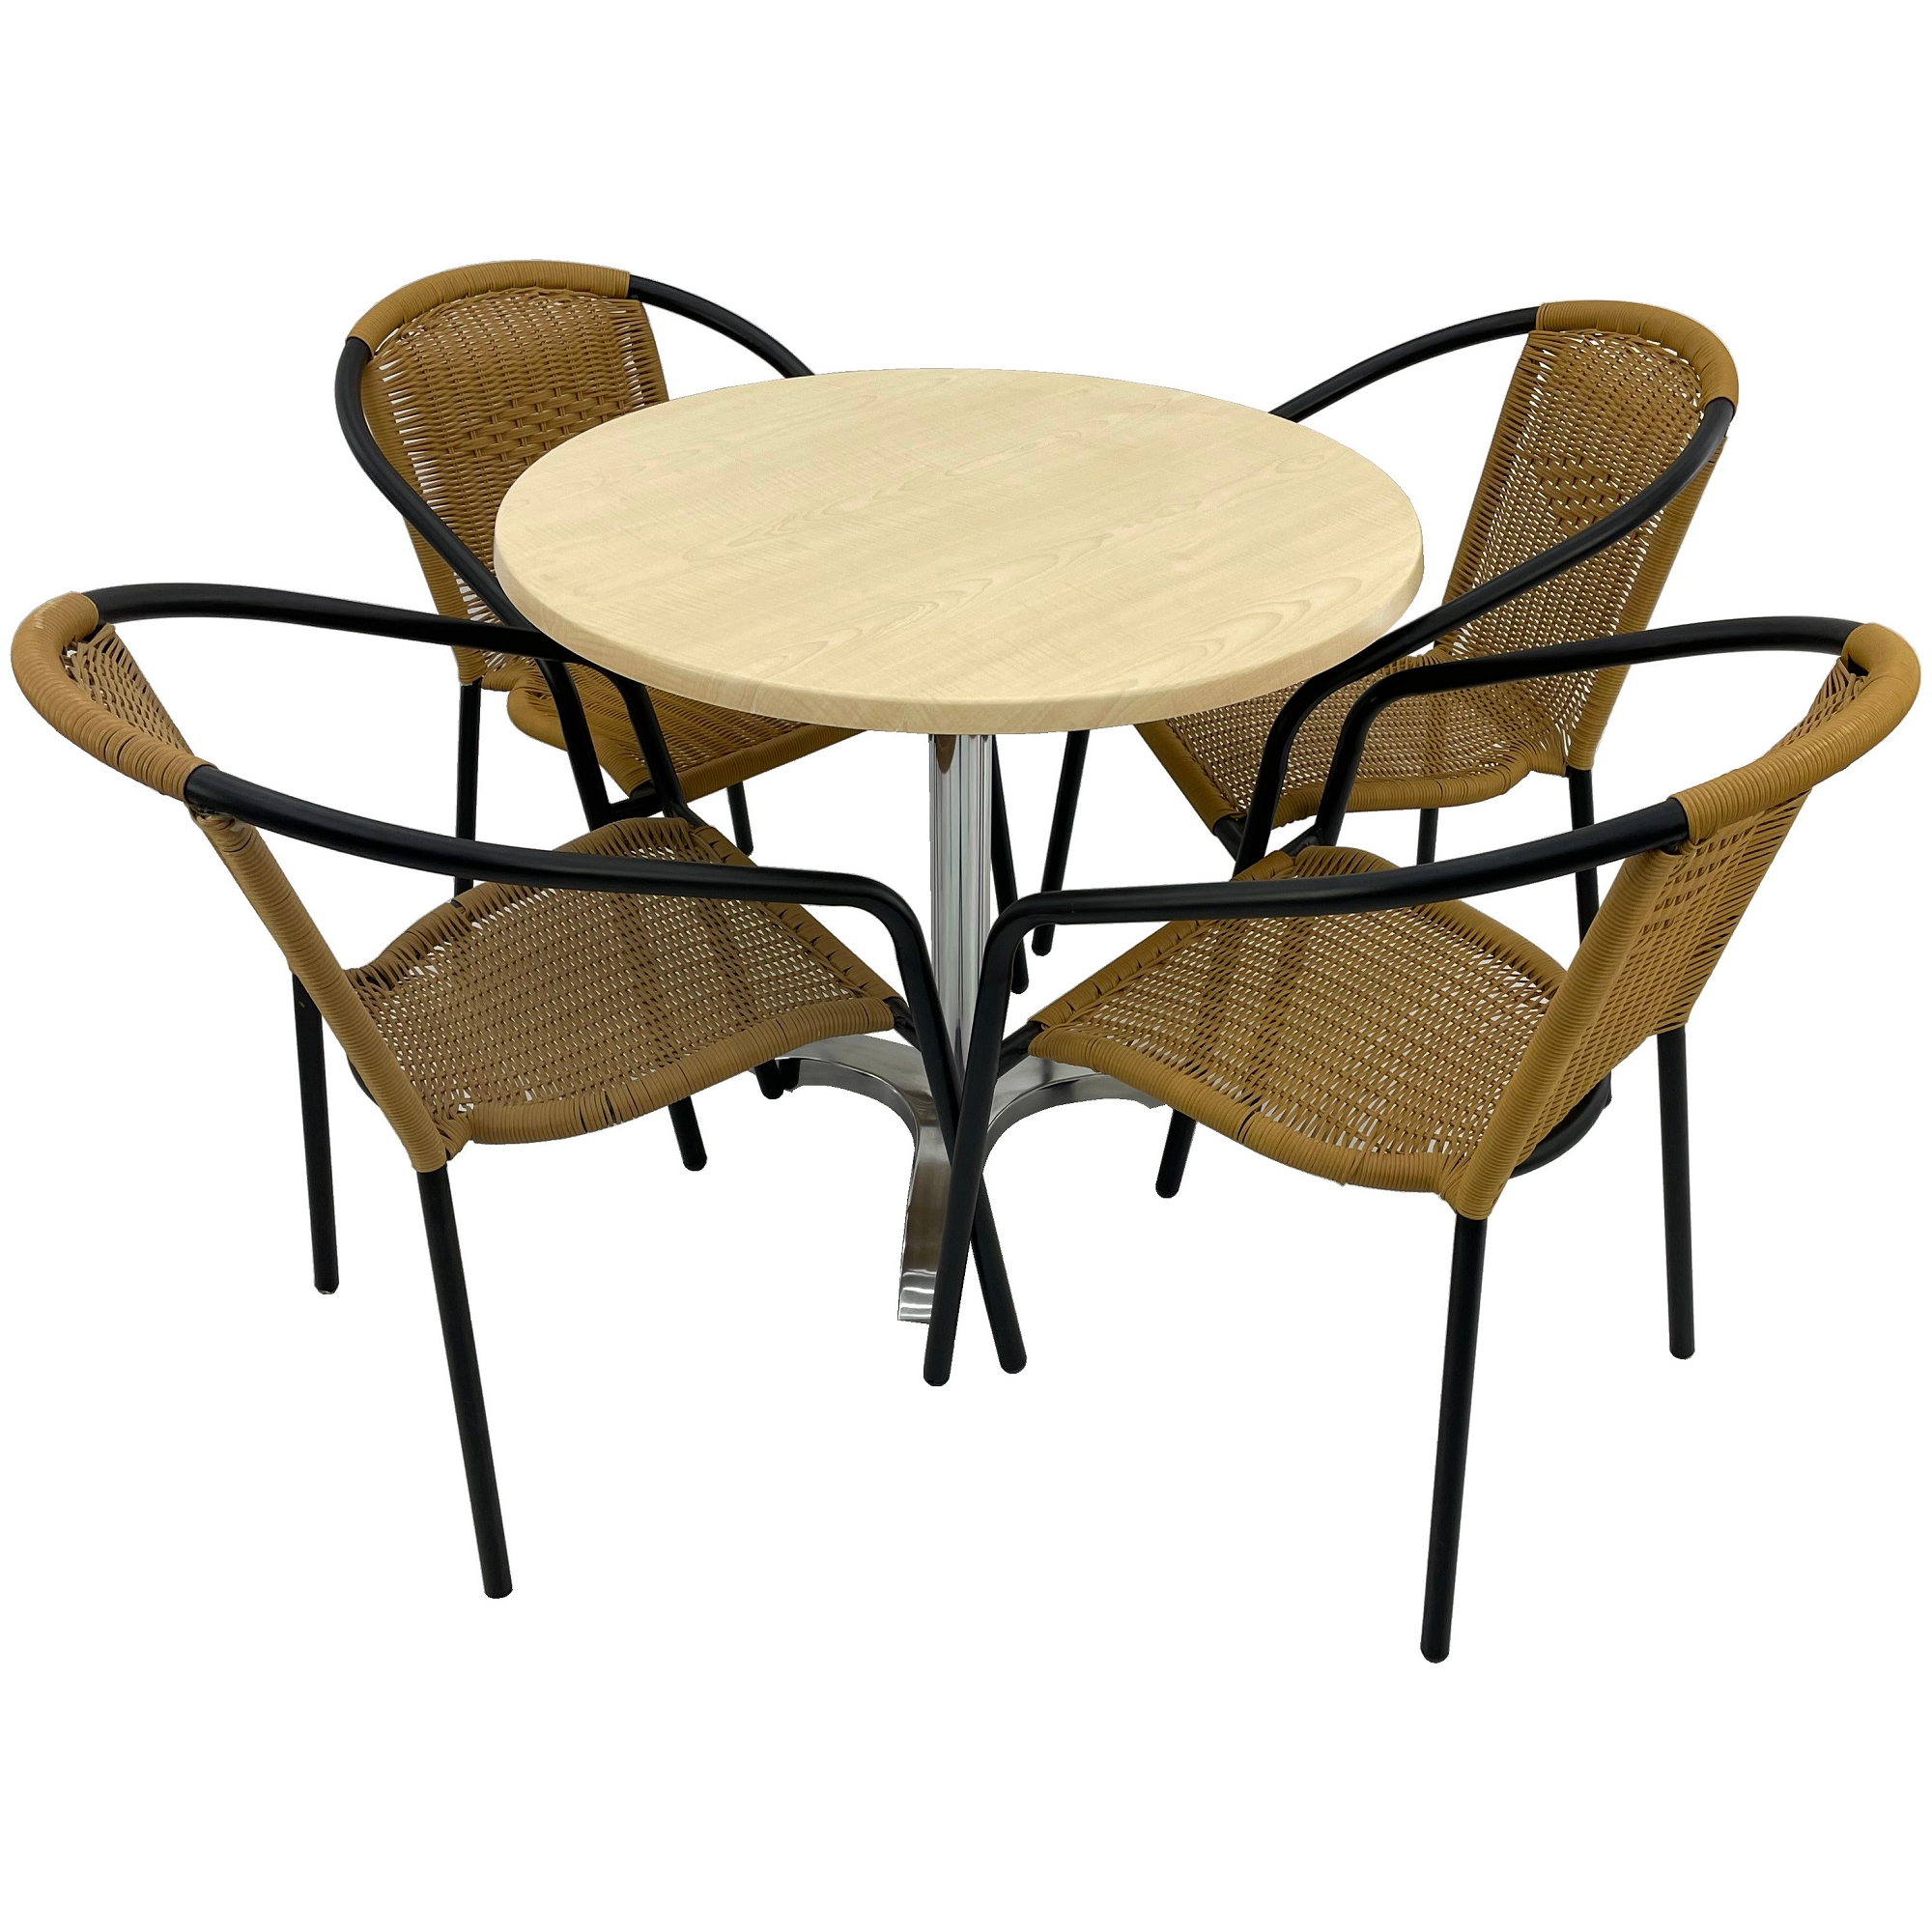 Set cafenea, masa rotunda D80cm AGMA HORECA MAPLE cu blat werzalit si picior aluminiu, 4 scaune TORO PVC ratan